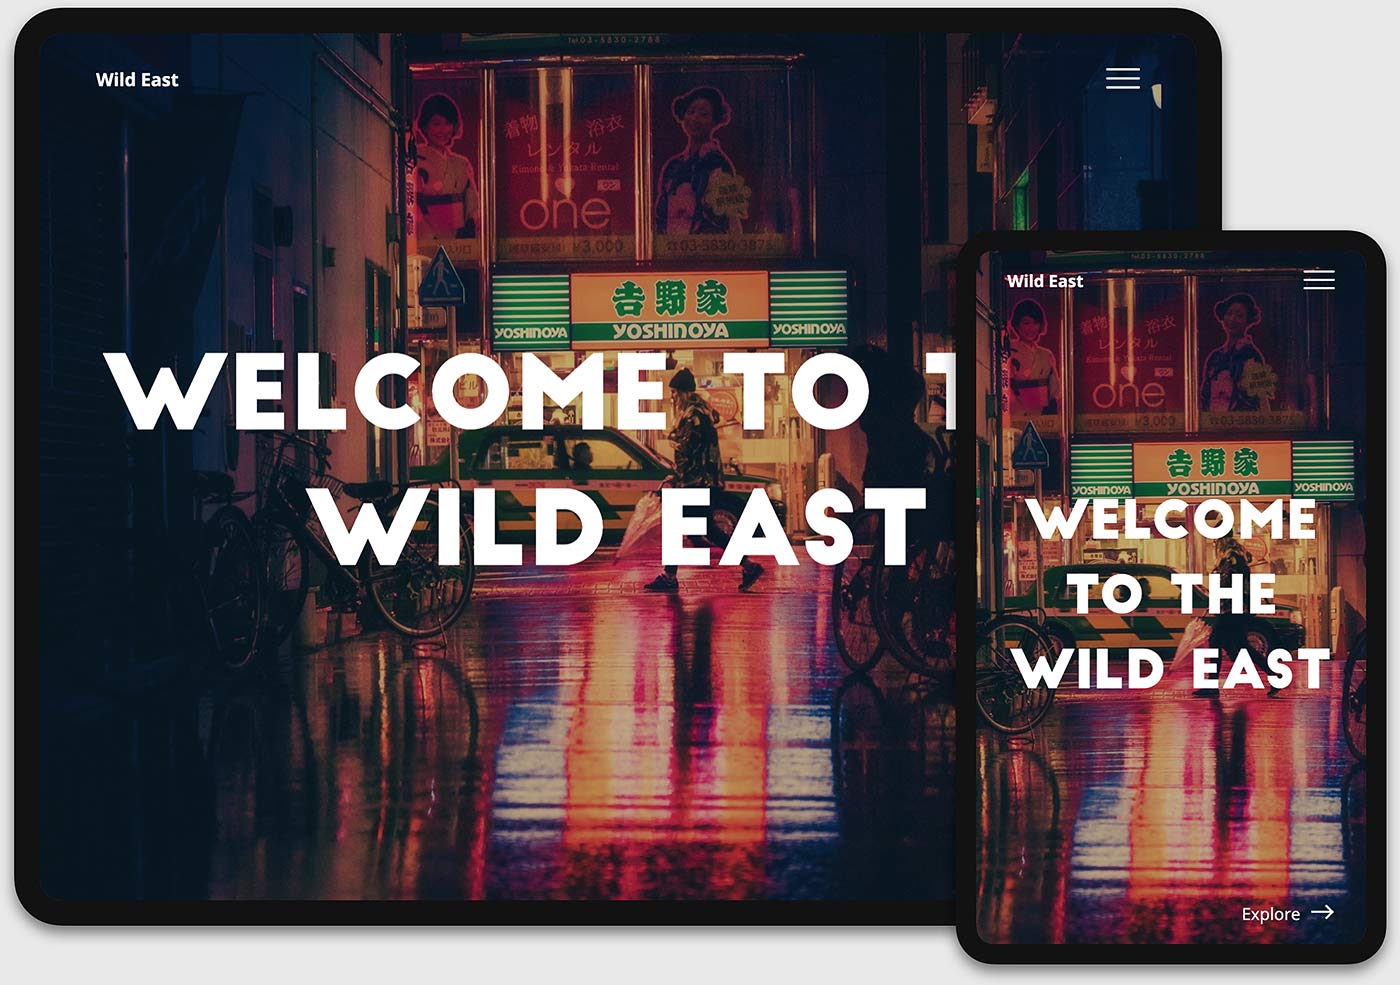 Design: Wild East